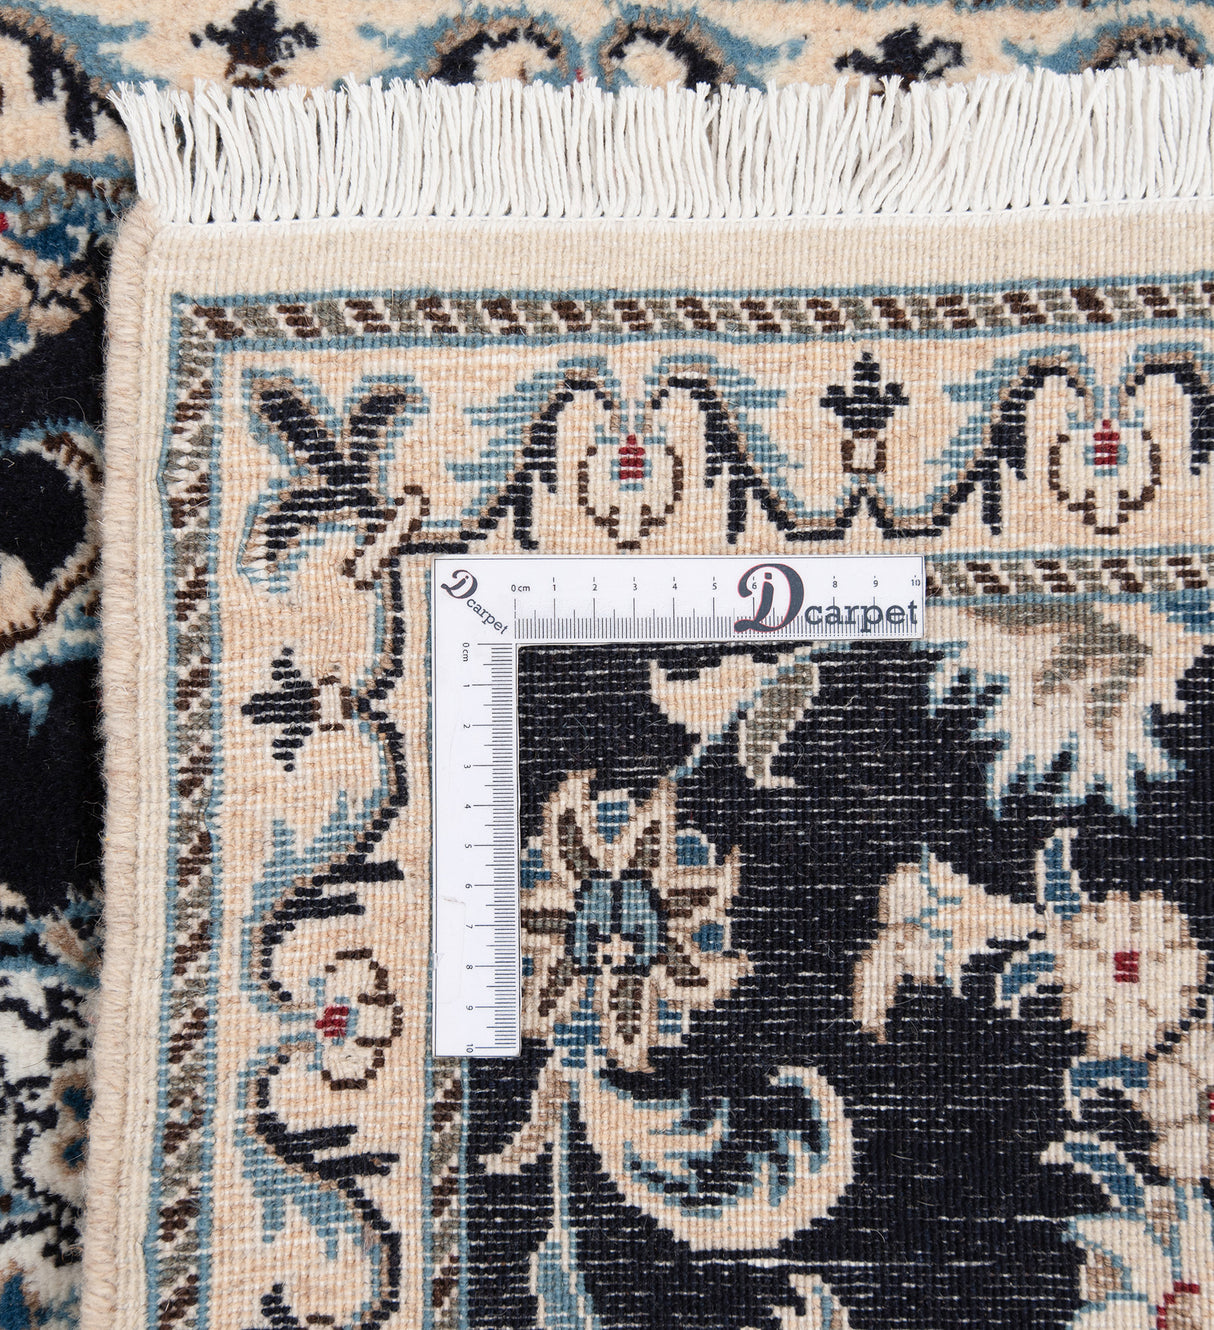 Carpete Nain Persa | 295 x 77 cm